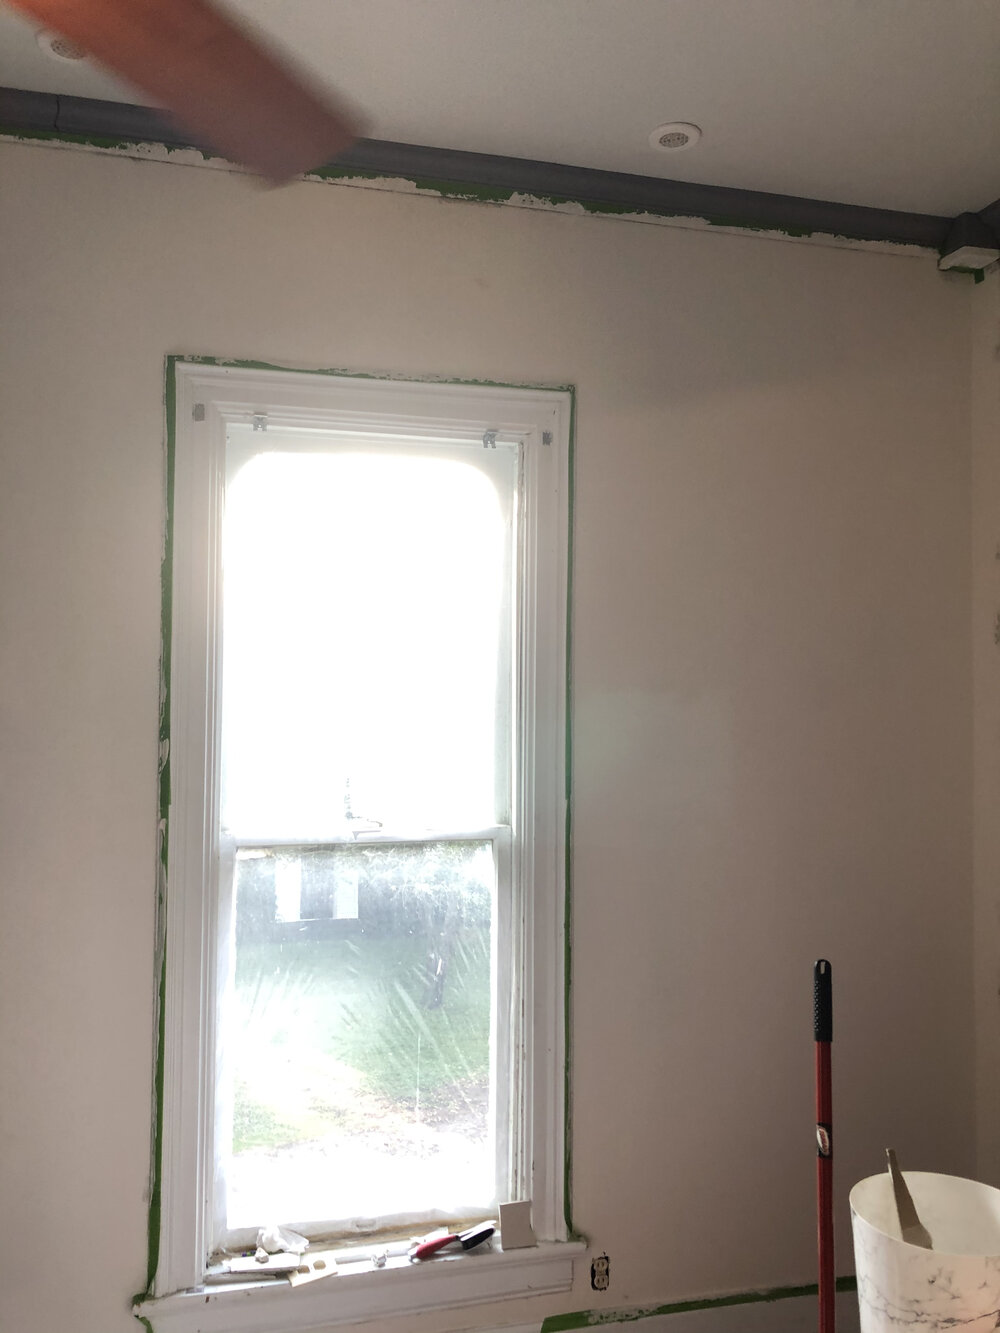 plaster repair window.jpg